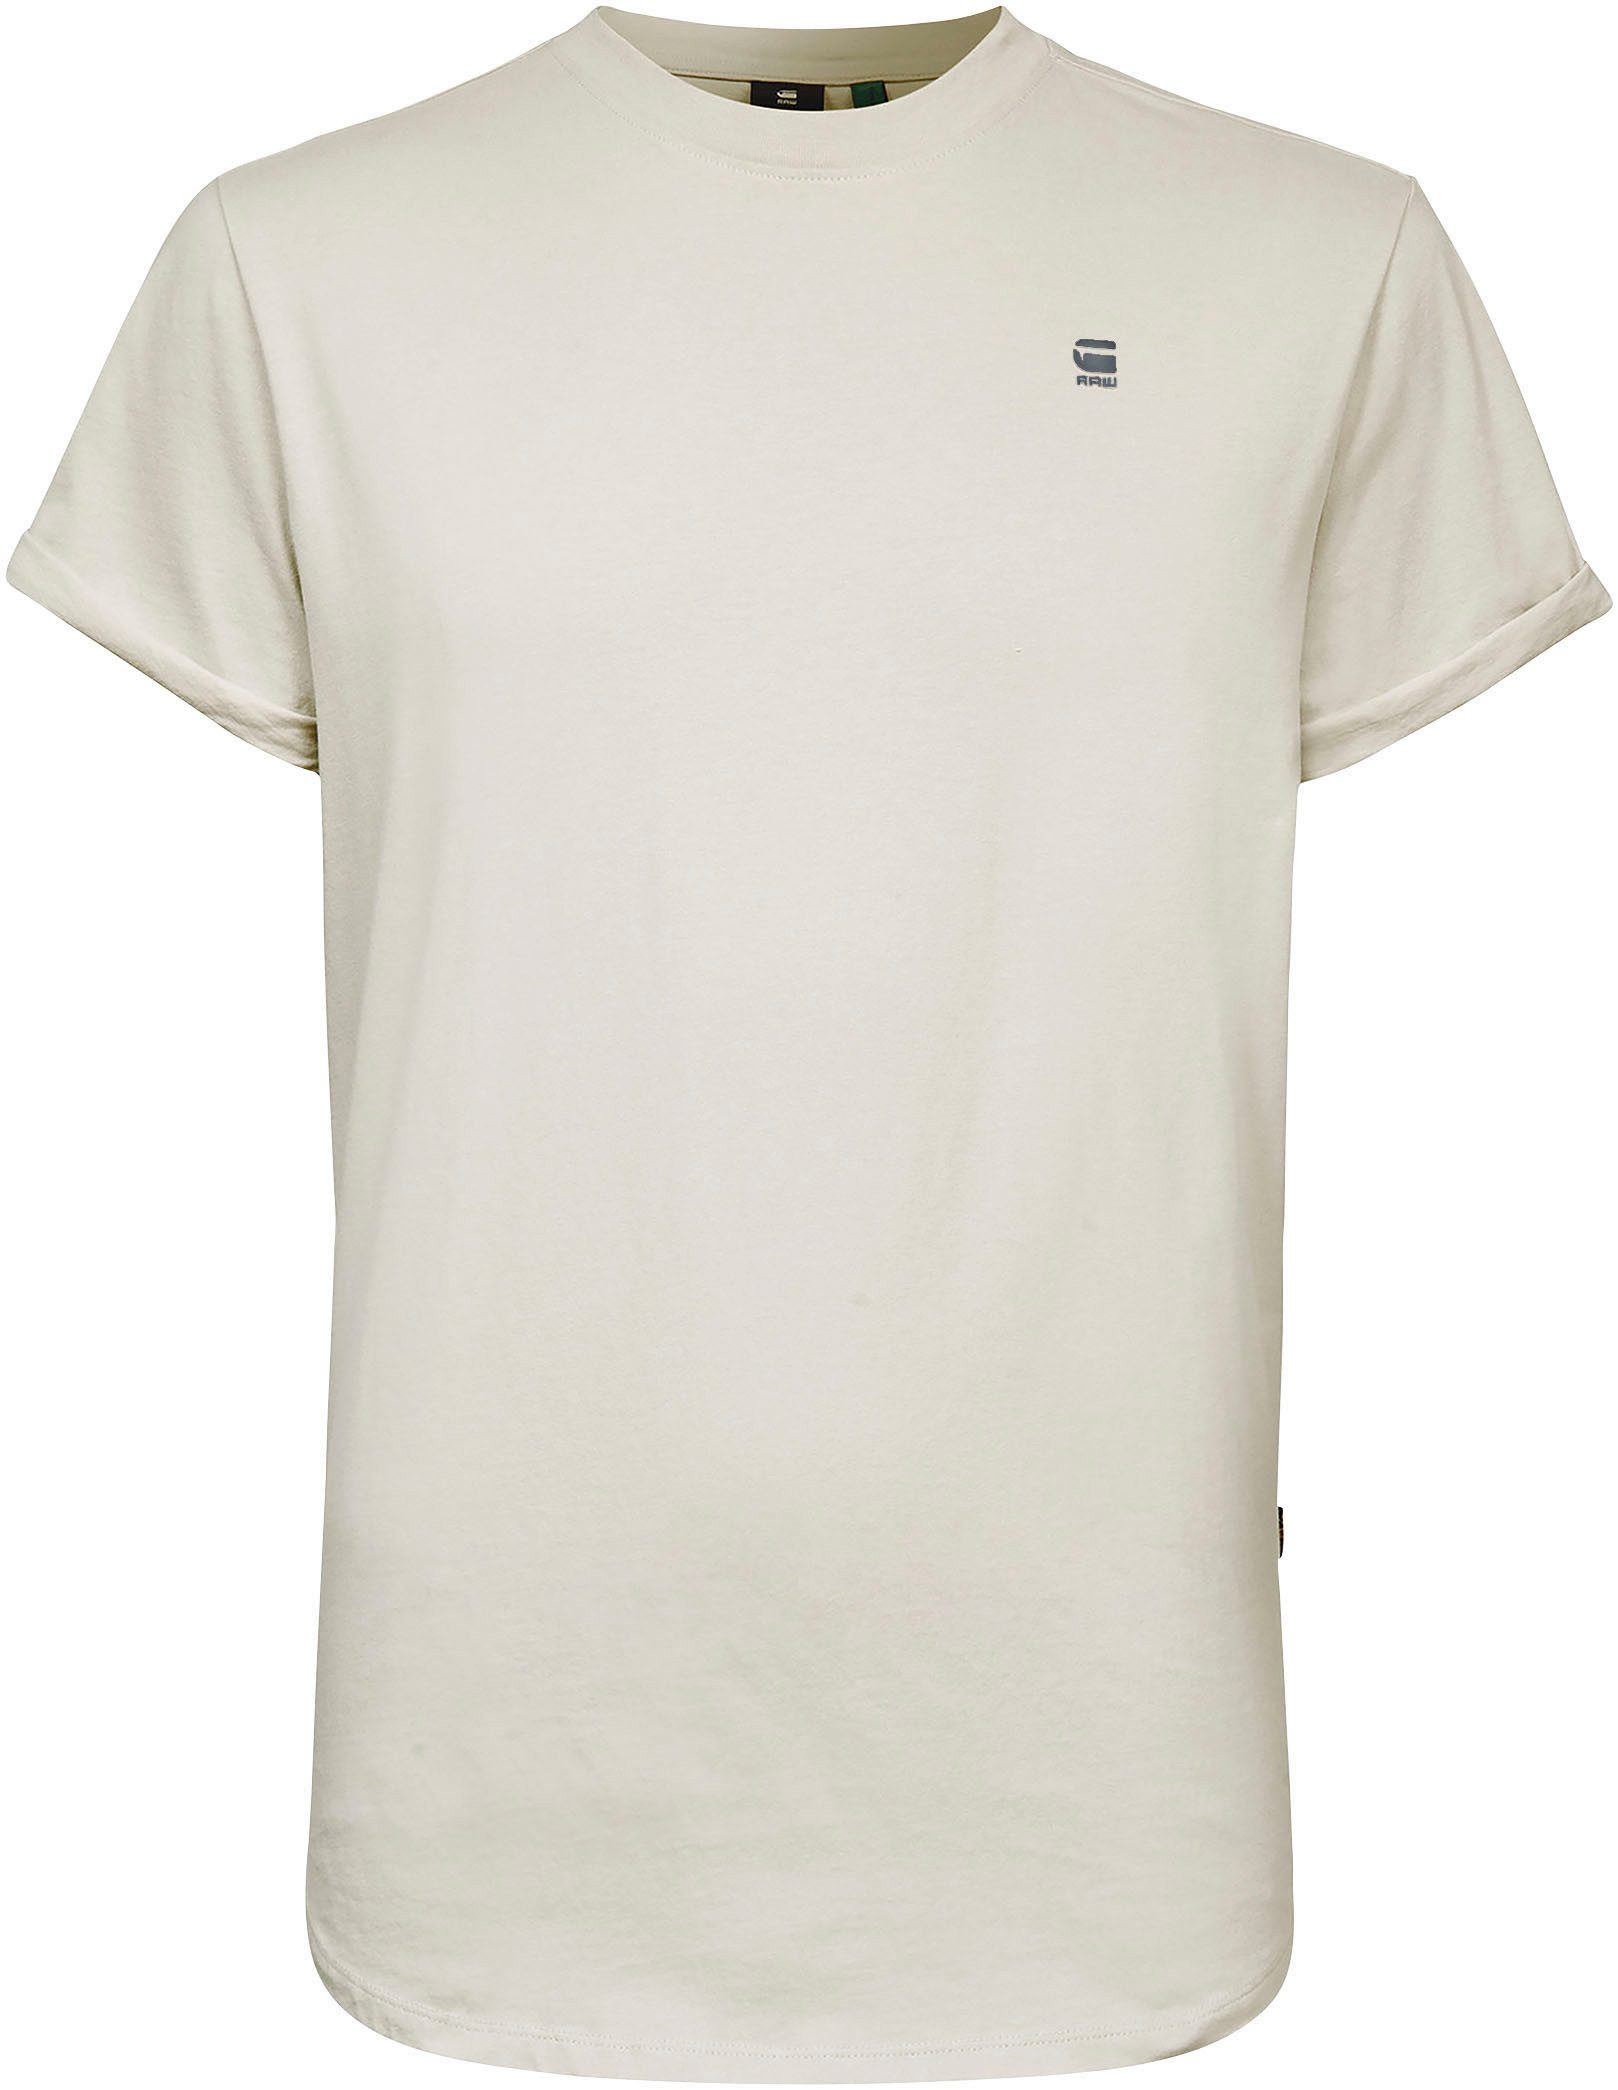 T-Shirt mit bait Logo kleinem white Stitching Lash G-Star RAW